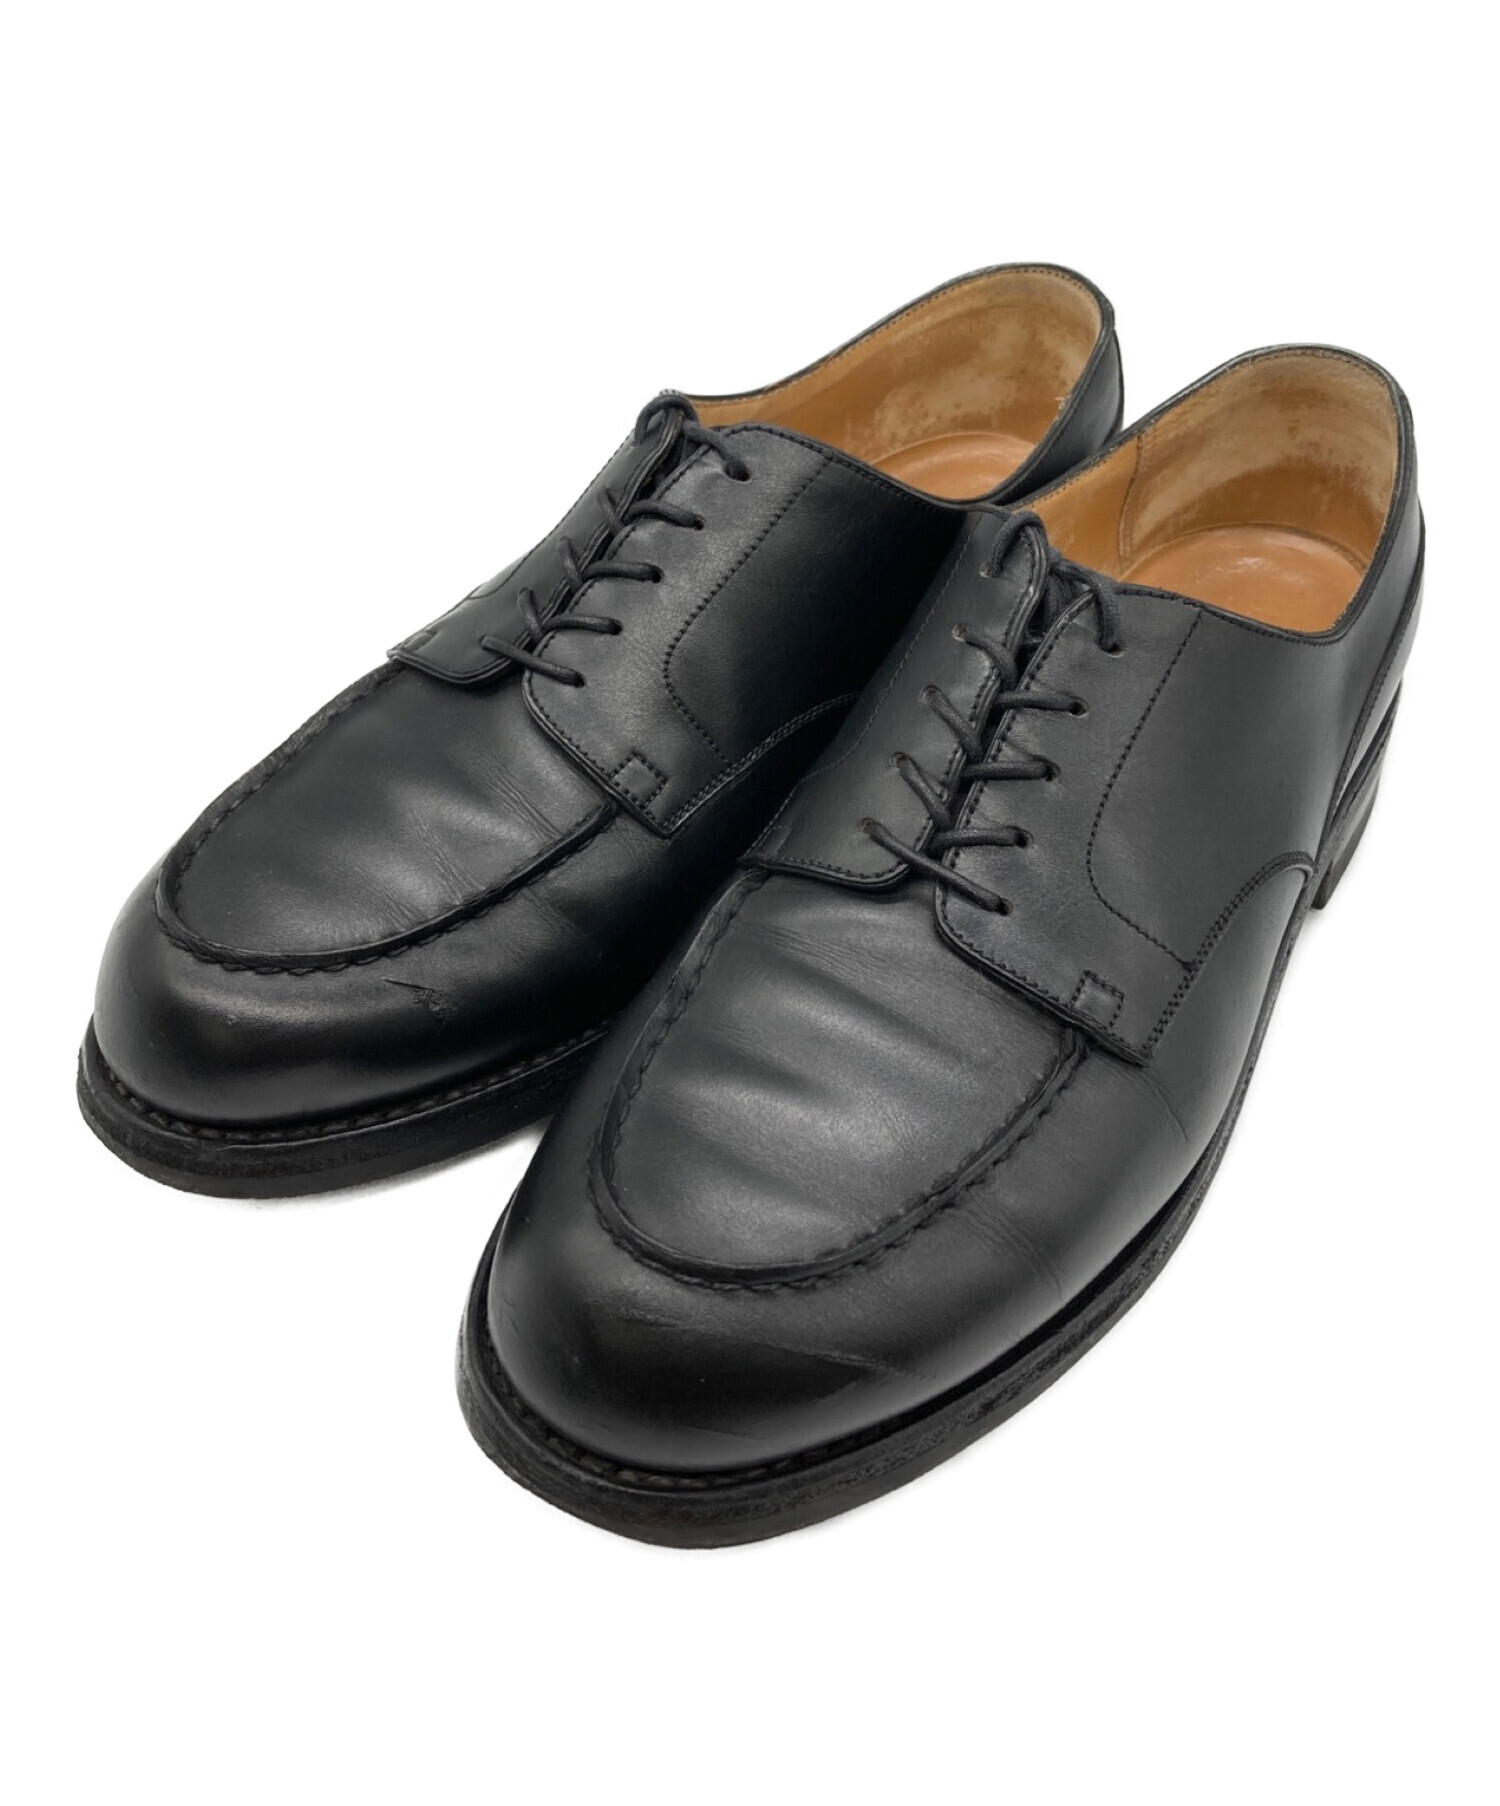 オールシーズン付属品ジェイエムウエストン J.M. WESTON レザーシューズ ダービーシューズ Uチップ カーフレザー 革靴 メンズ 9.5D(28cm相当) ブラウン